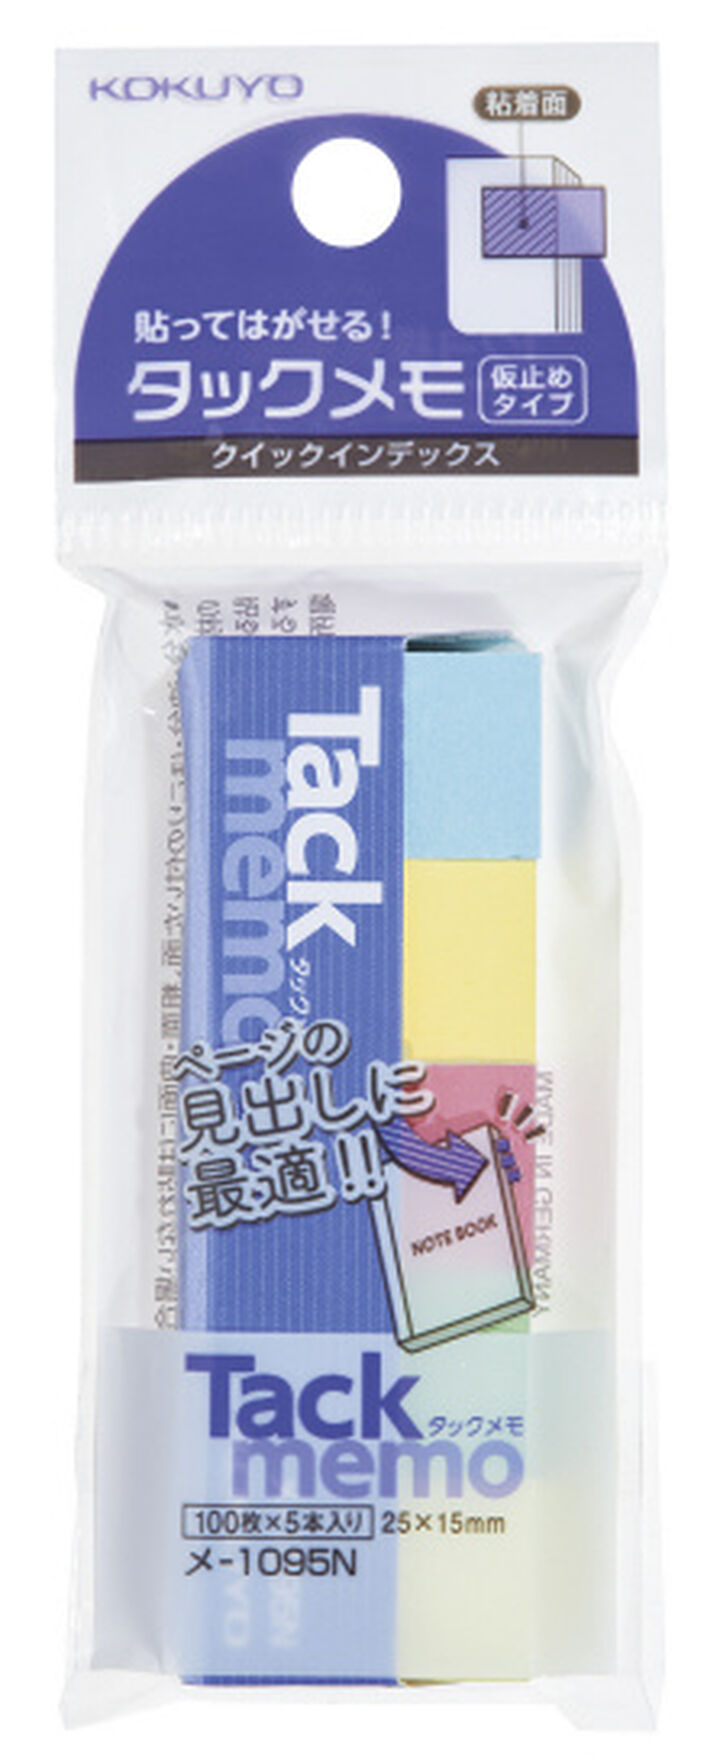 Tack Memo Quick Index Sticky Notes 1.5 cm x 2.5 cm,Mixed, medium image number 0